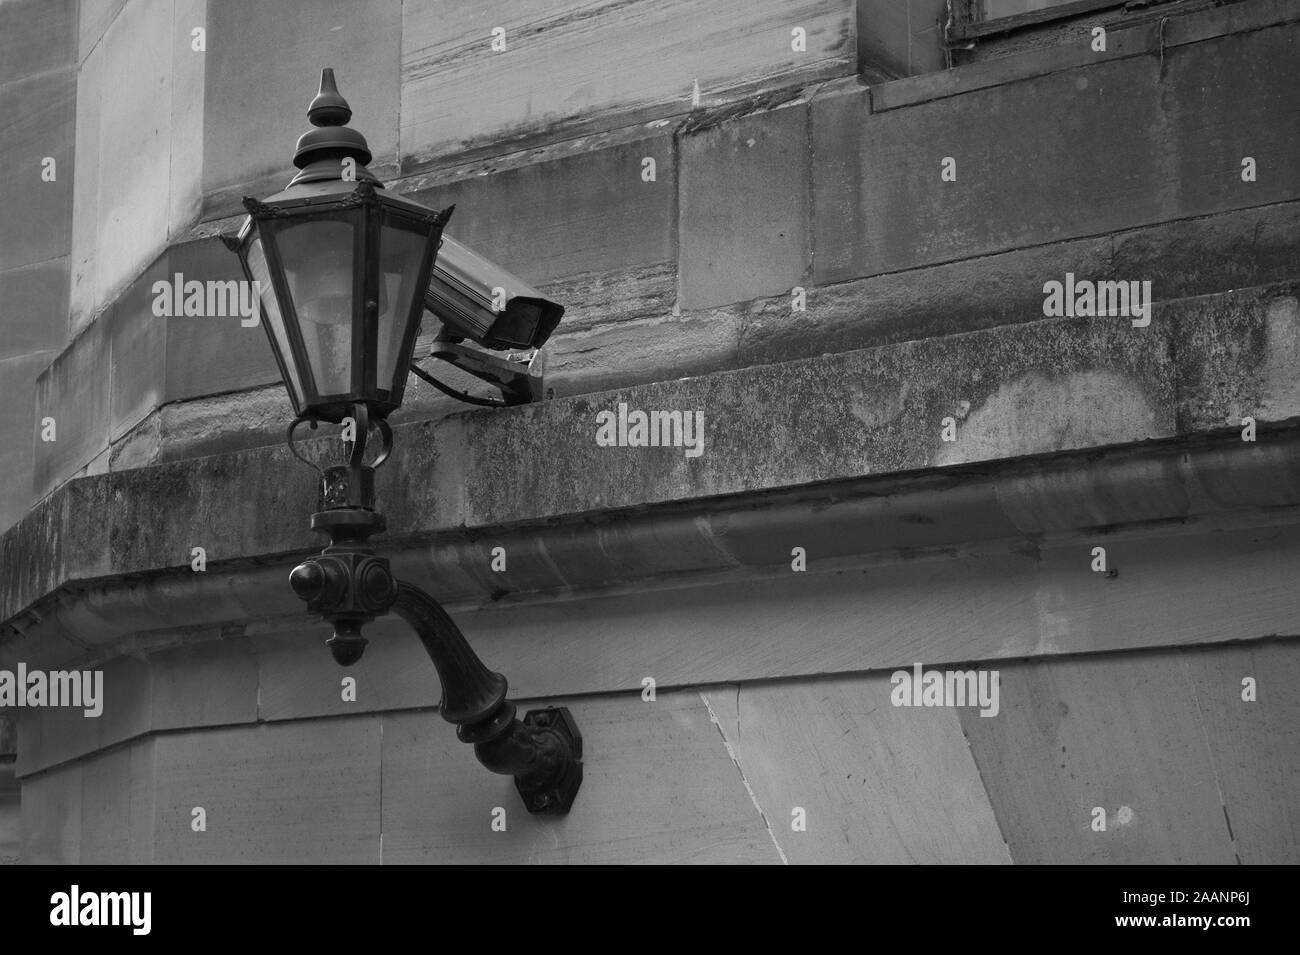 Überwachungskameras (CCTV) hinter einem alten viktorianischen Stil Straßenlaterne an der Seite eines historischen Gebäudes mit einem architektonischen Gesims entfernt Stockfoto